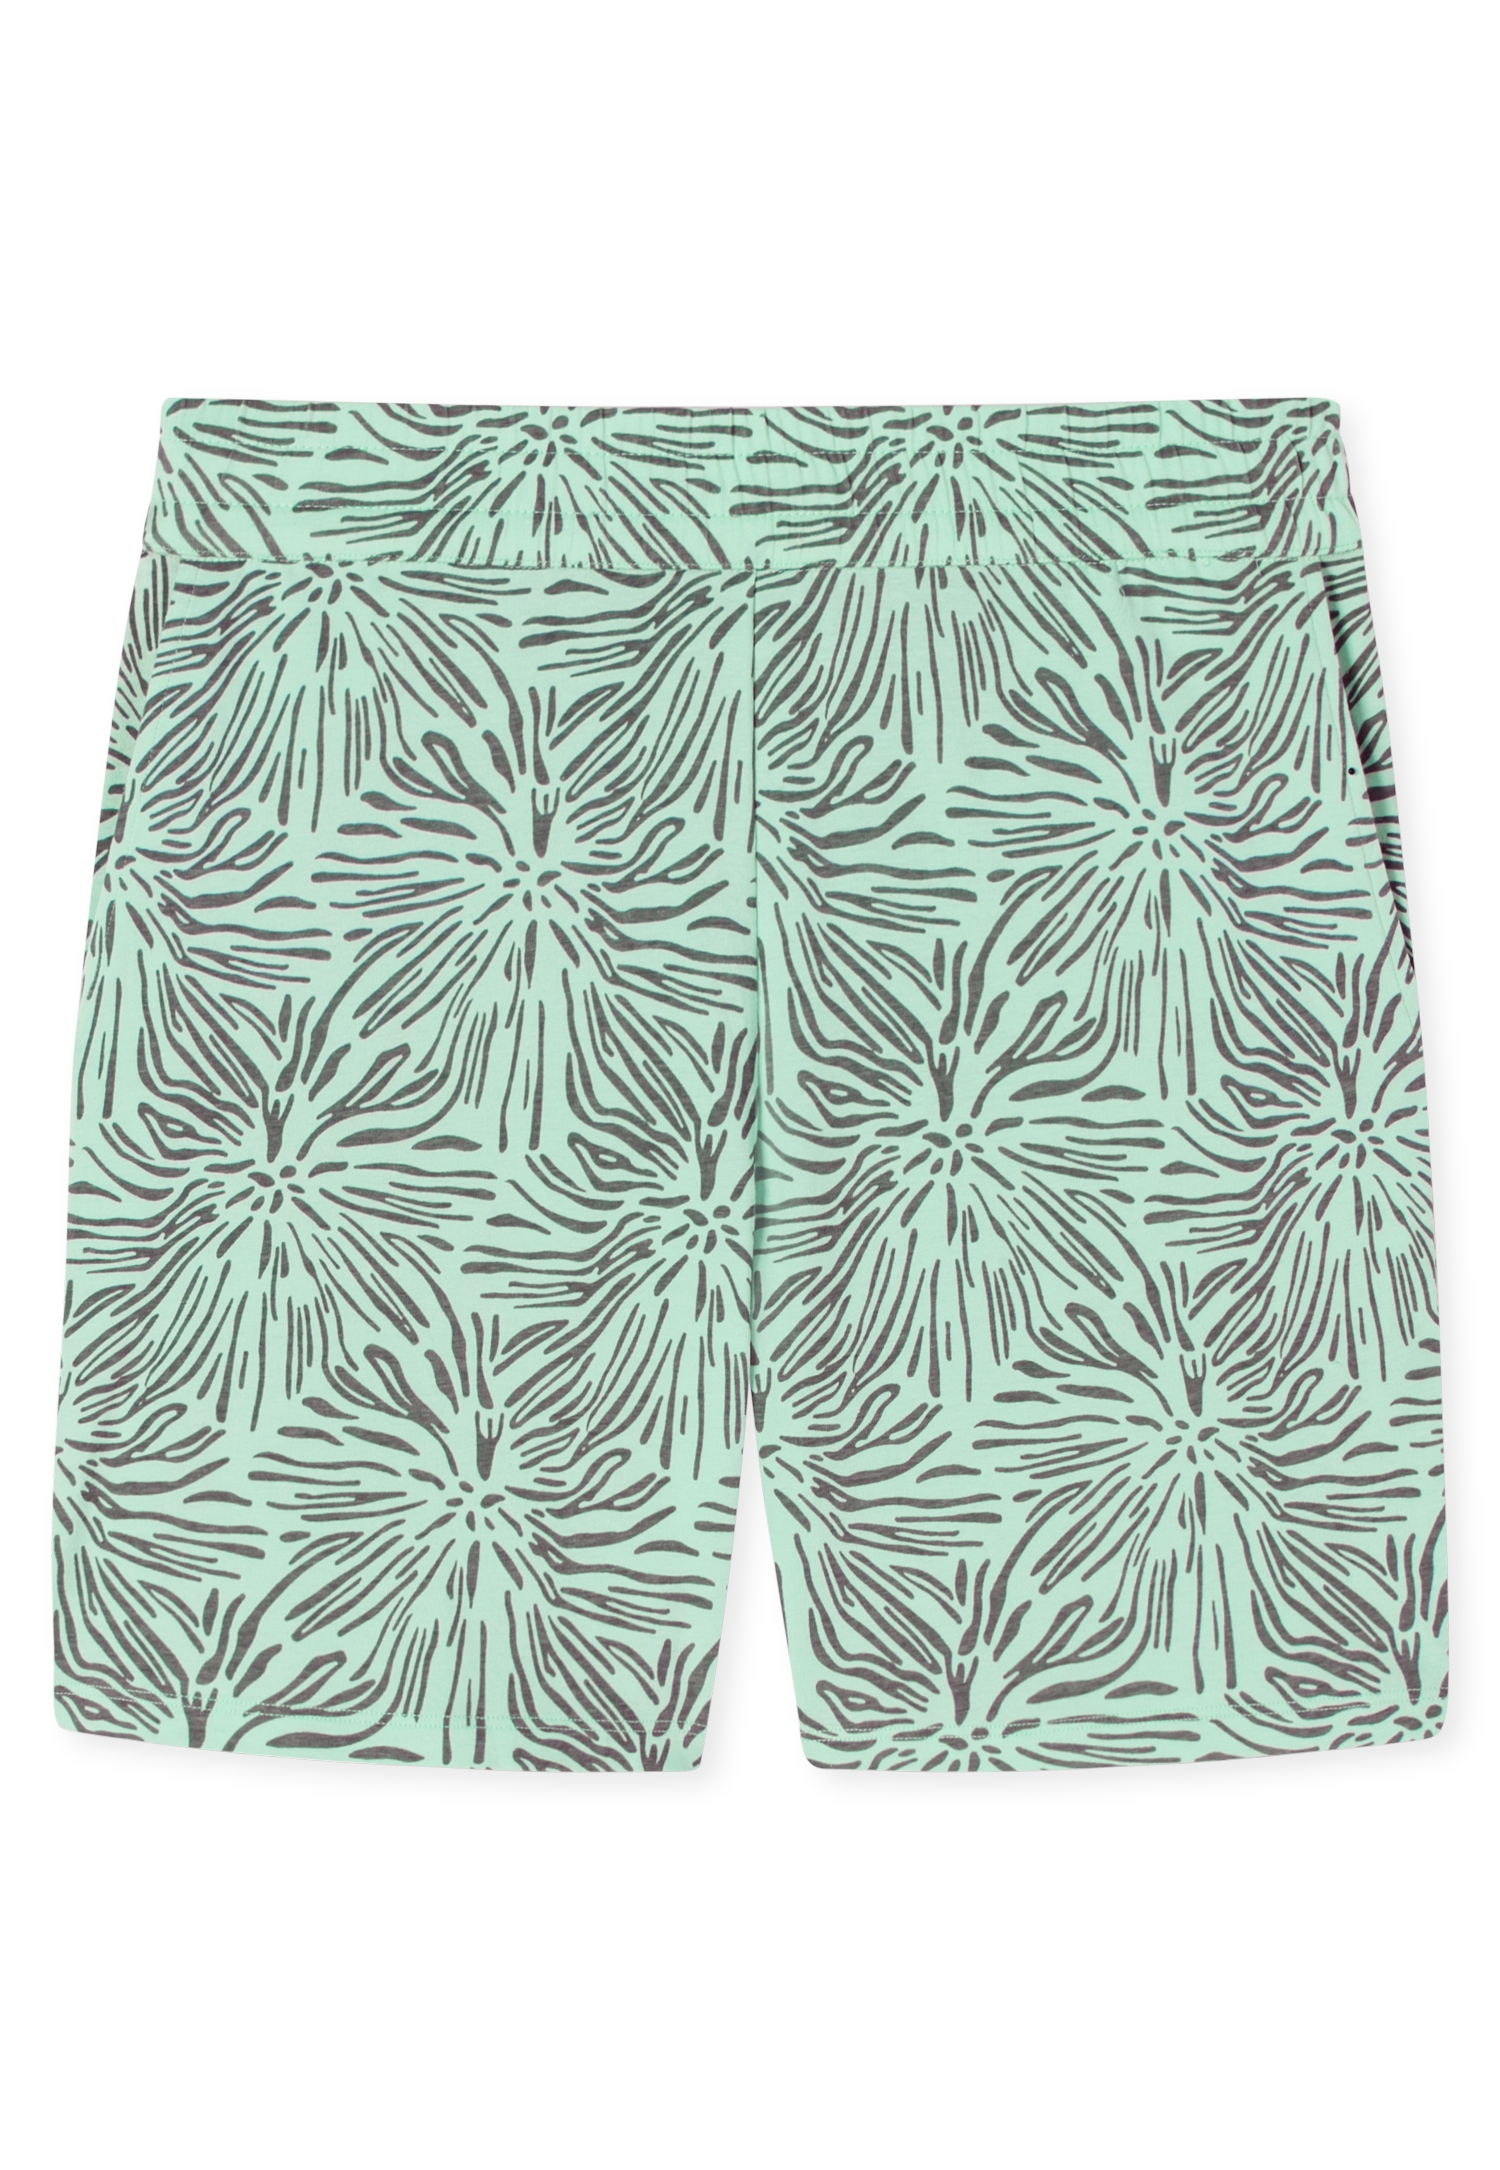 Damen-Sleepwear-Hose mit Beach-Muster aus elastischer Baumwolle